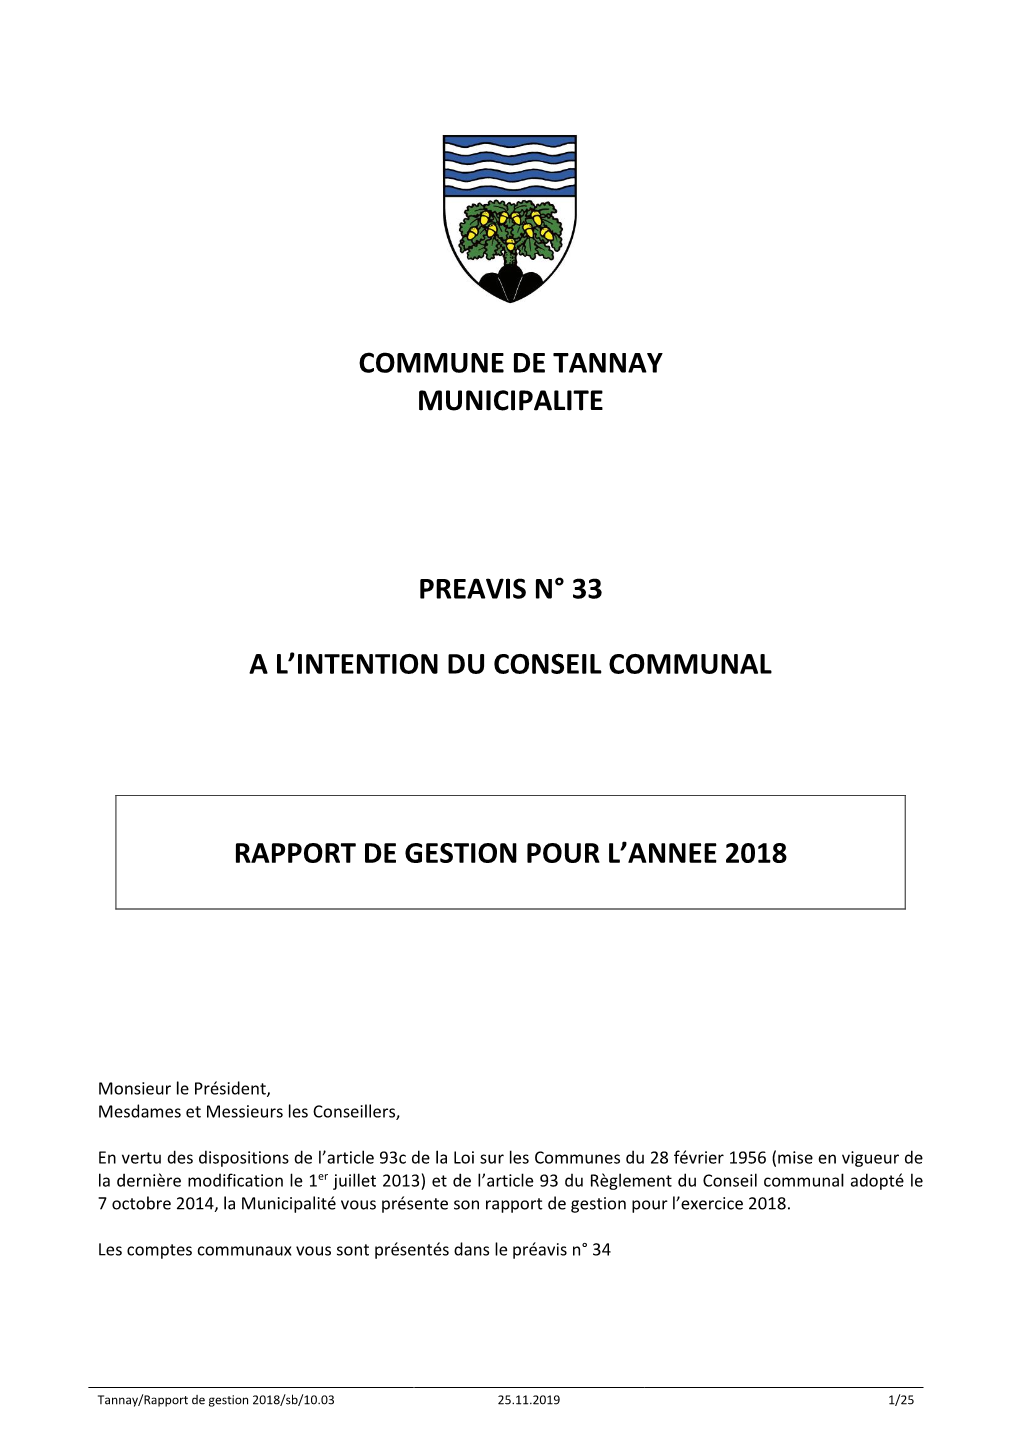 Commune De Tannay Municipalite Preavis N° 33 a L'intention Du